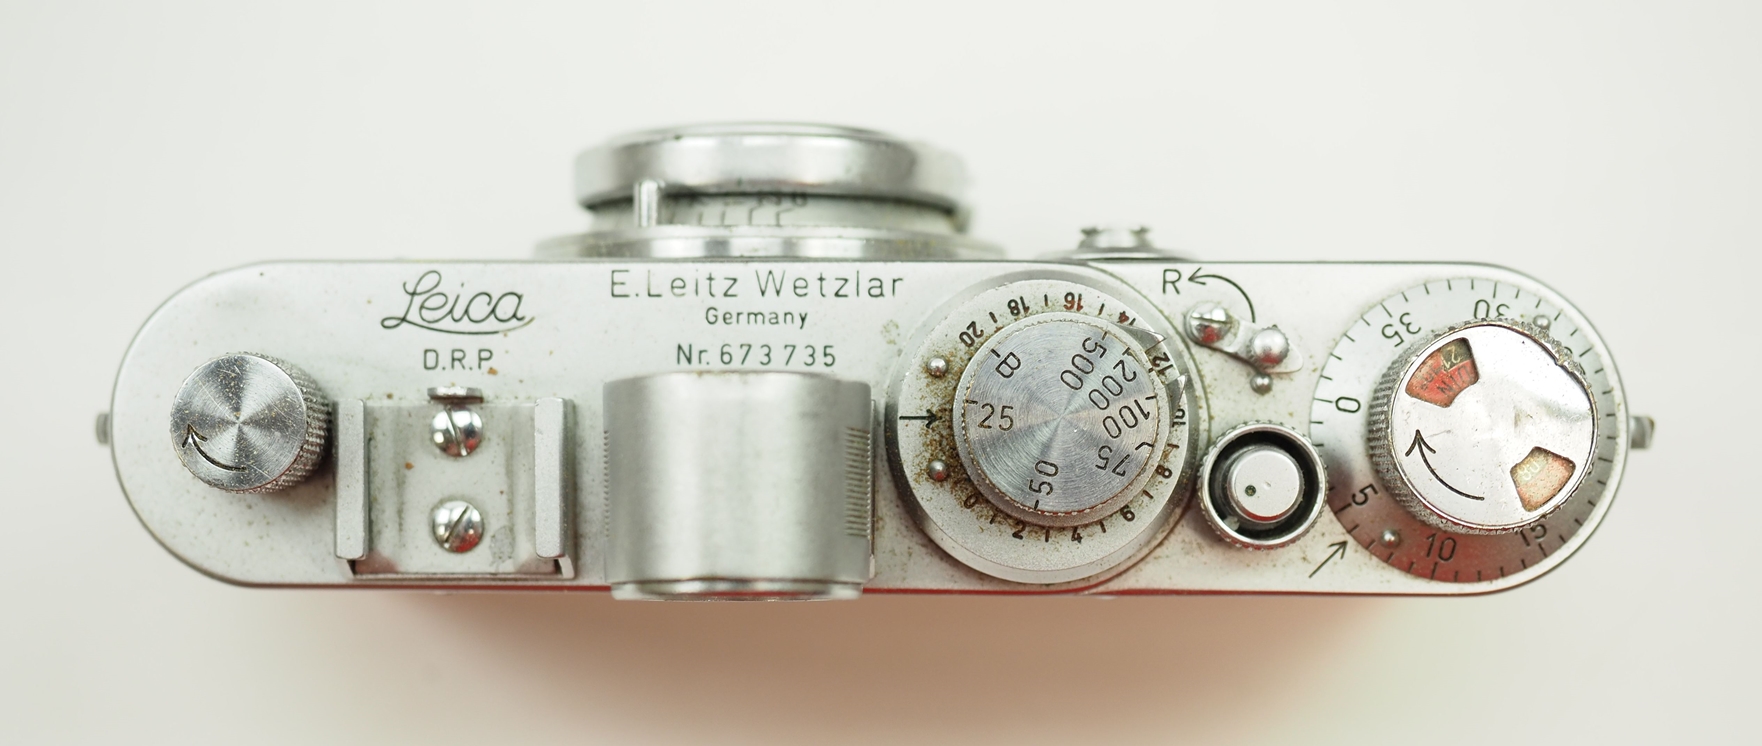 Leica Camera - mit Objektiv und Tasche. - Image 3 of 5